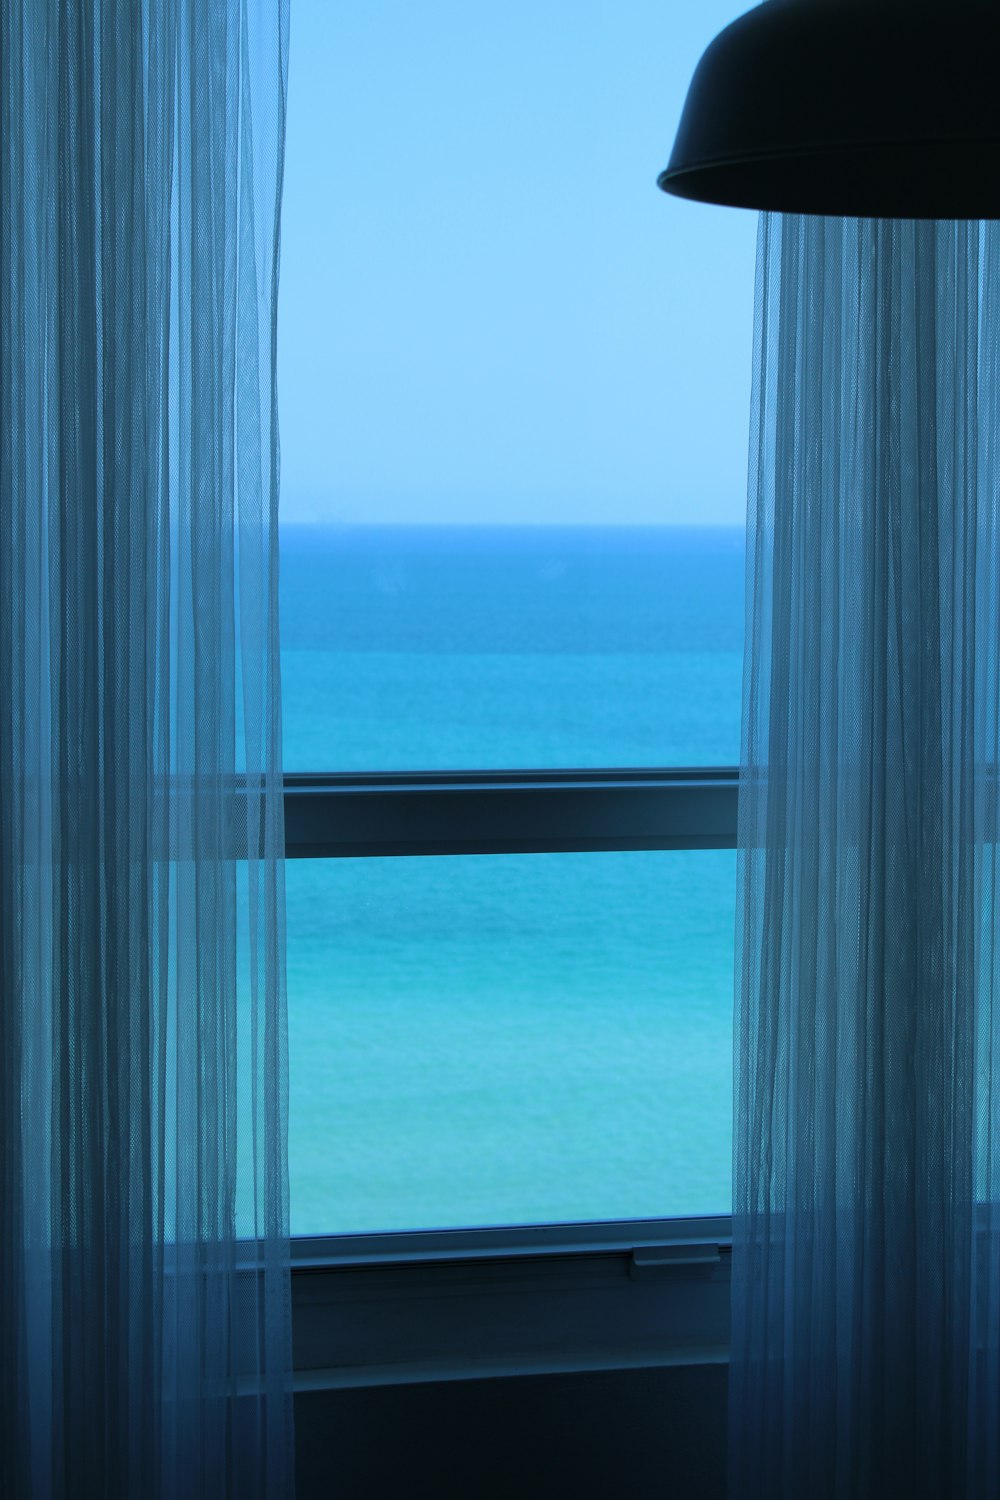 호텔 객실 창문에서 바라본 바다 풍경